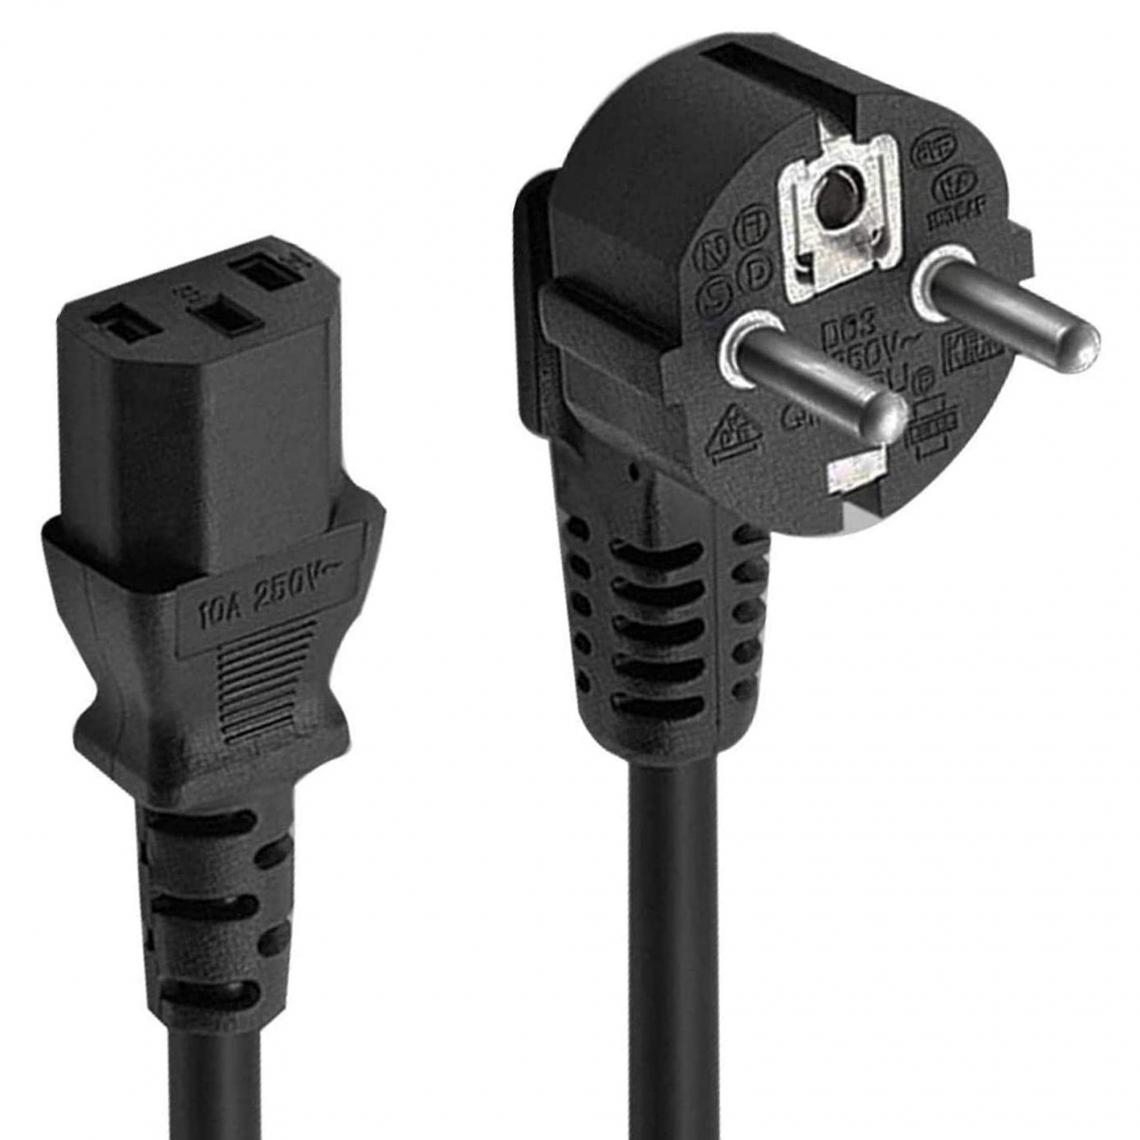 D2 Diffusion - D2 Câble alimentation secteur Europa IEC C13 - pour PC fixe / moniteur Coloris noir - 1m50 - Accessoires alimentation